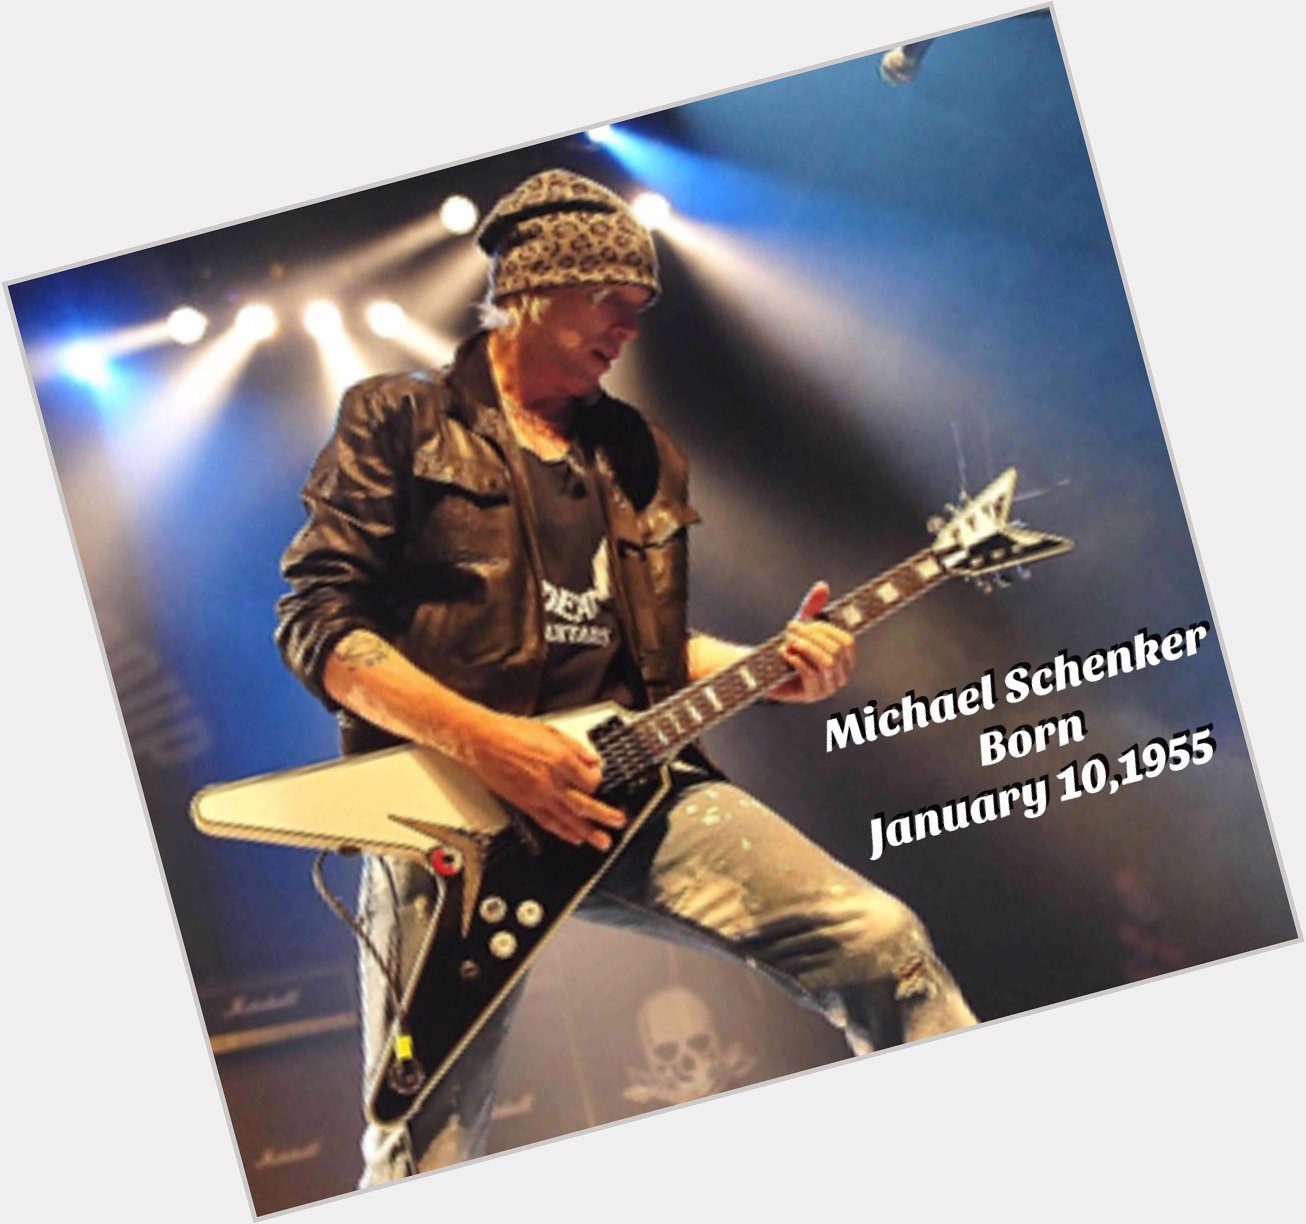 Happy Birthday to Michael Schenker 1/10/55
Rock Bottom- Michael Schenker 
 